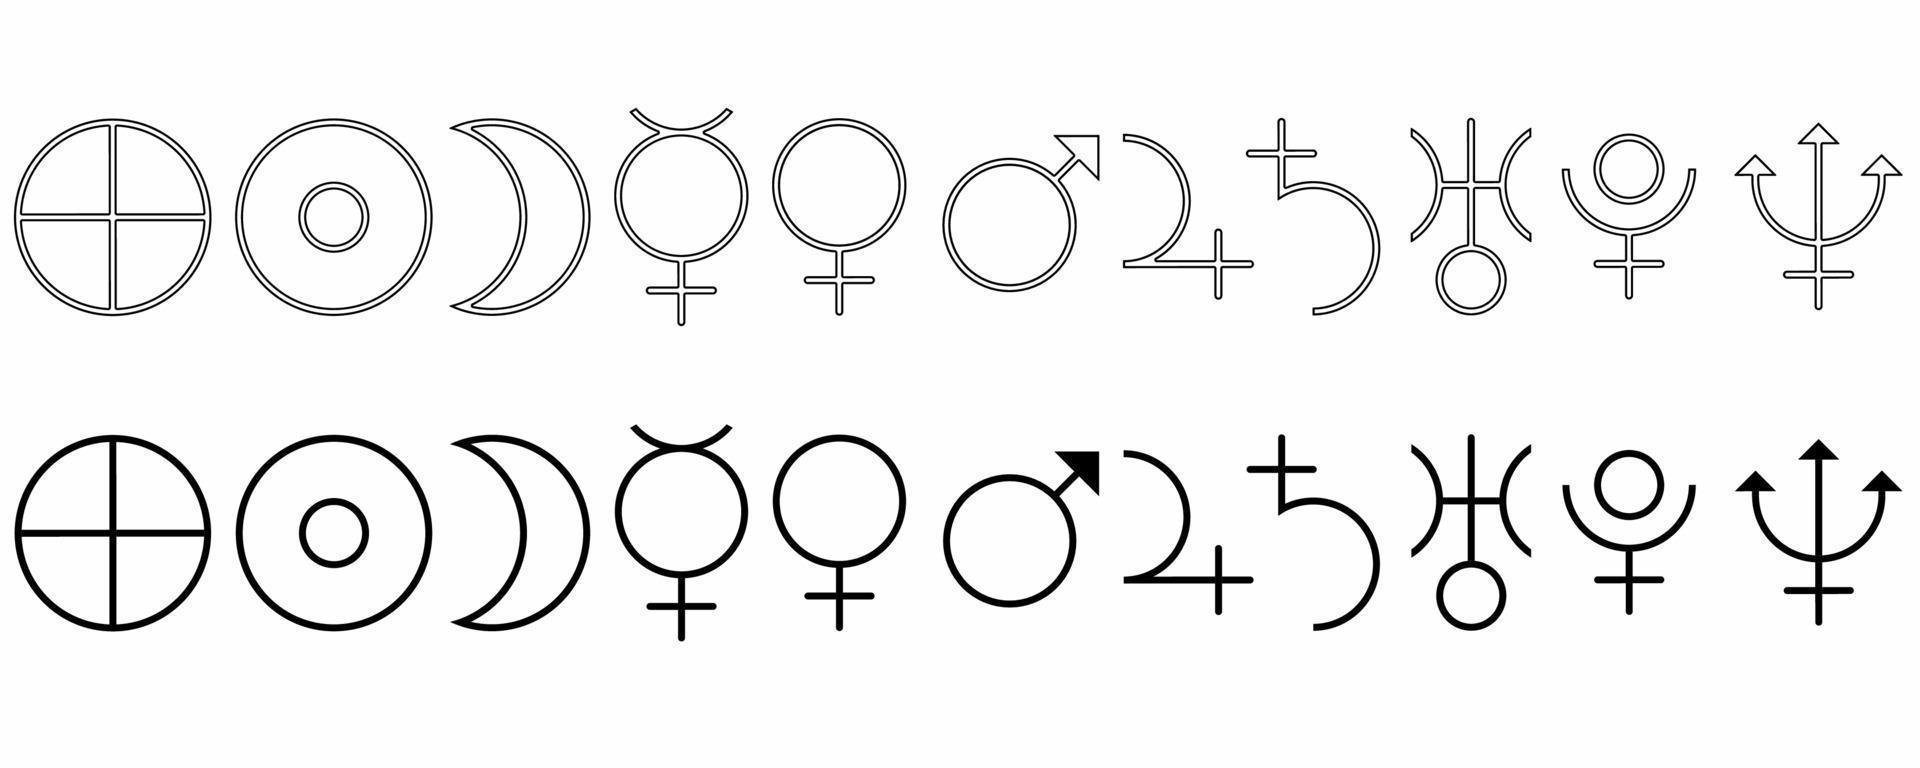 astrológico placa conjunto isolado em branco background.sun, lua, terra, mercúrio, Vênus, Marte, Júpiter, Saturno, Urano, Netuno, Plutão símbolo vetor